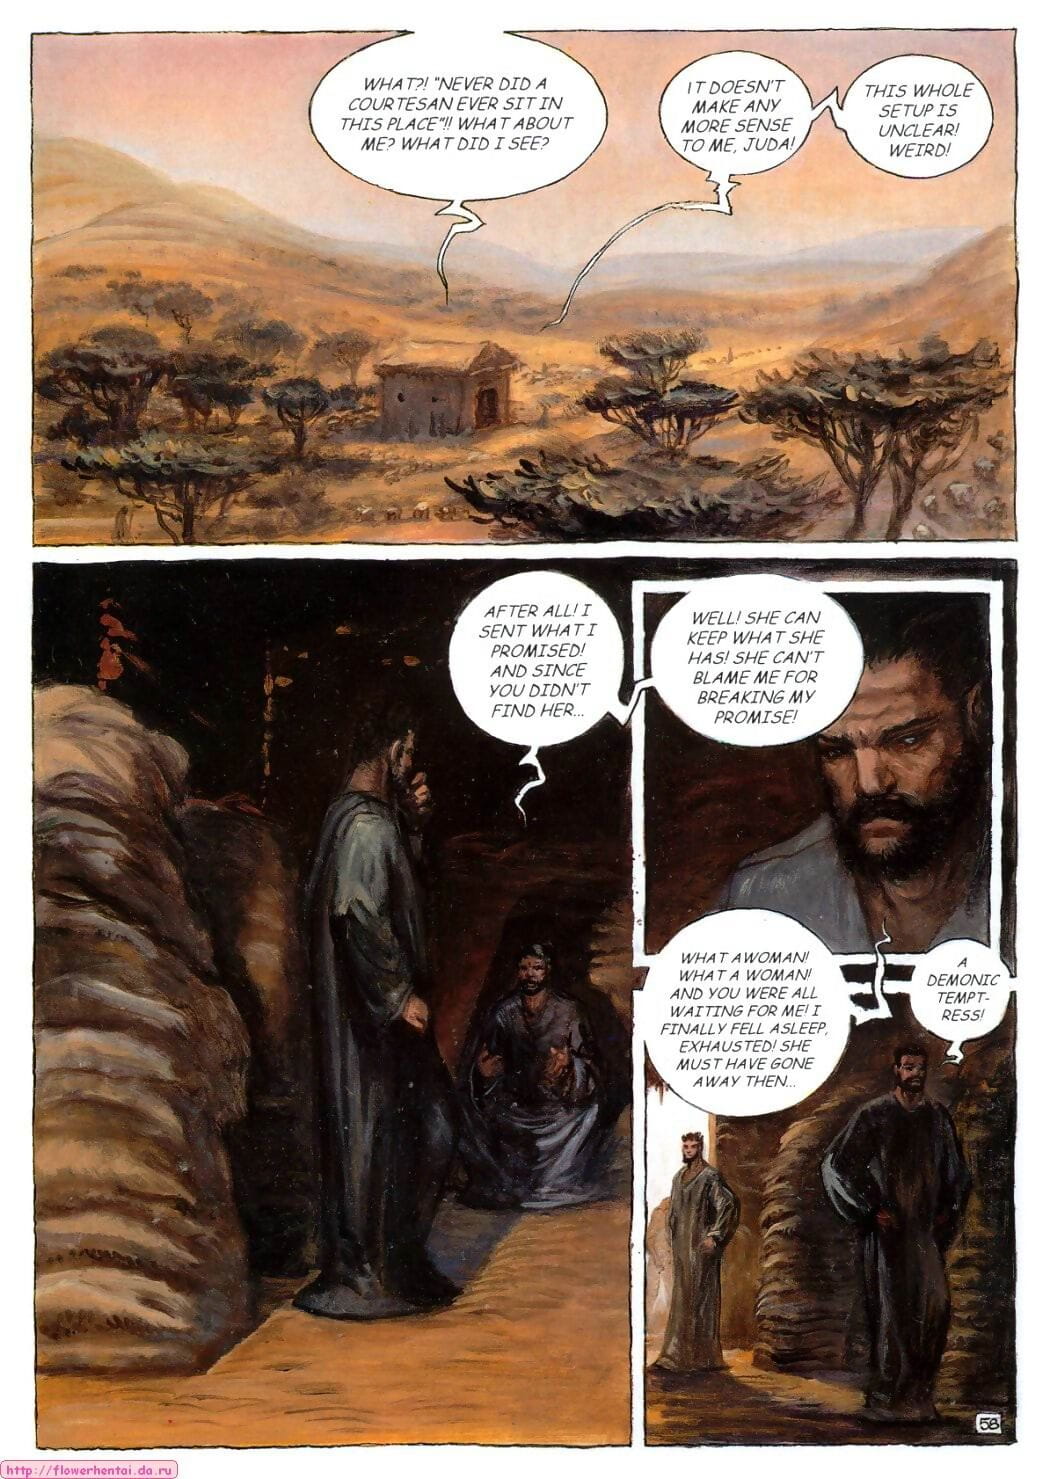 Thamara and Juda - part 2 page 1